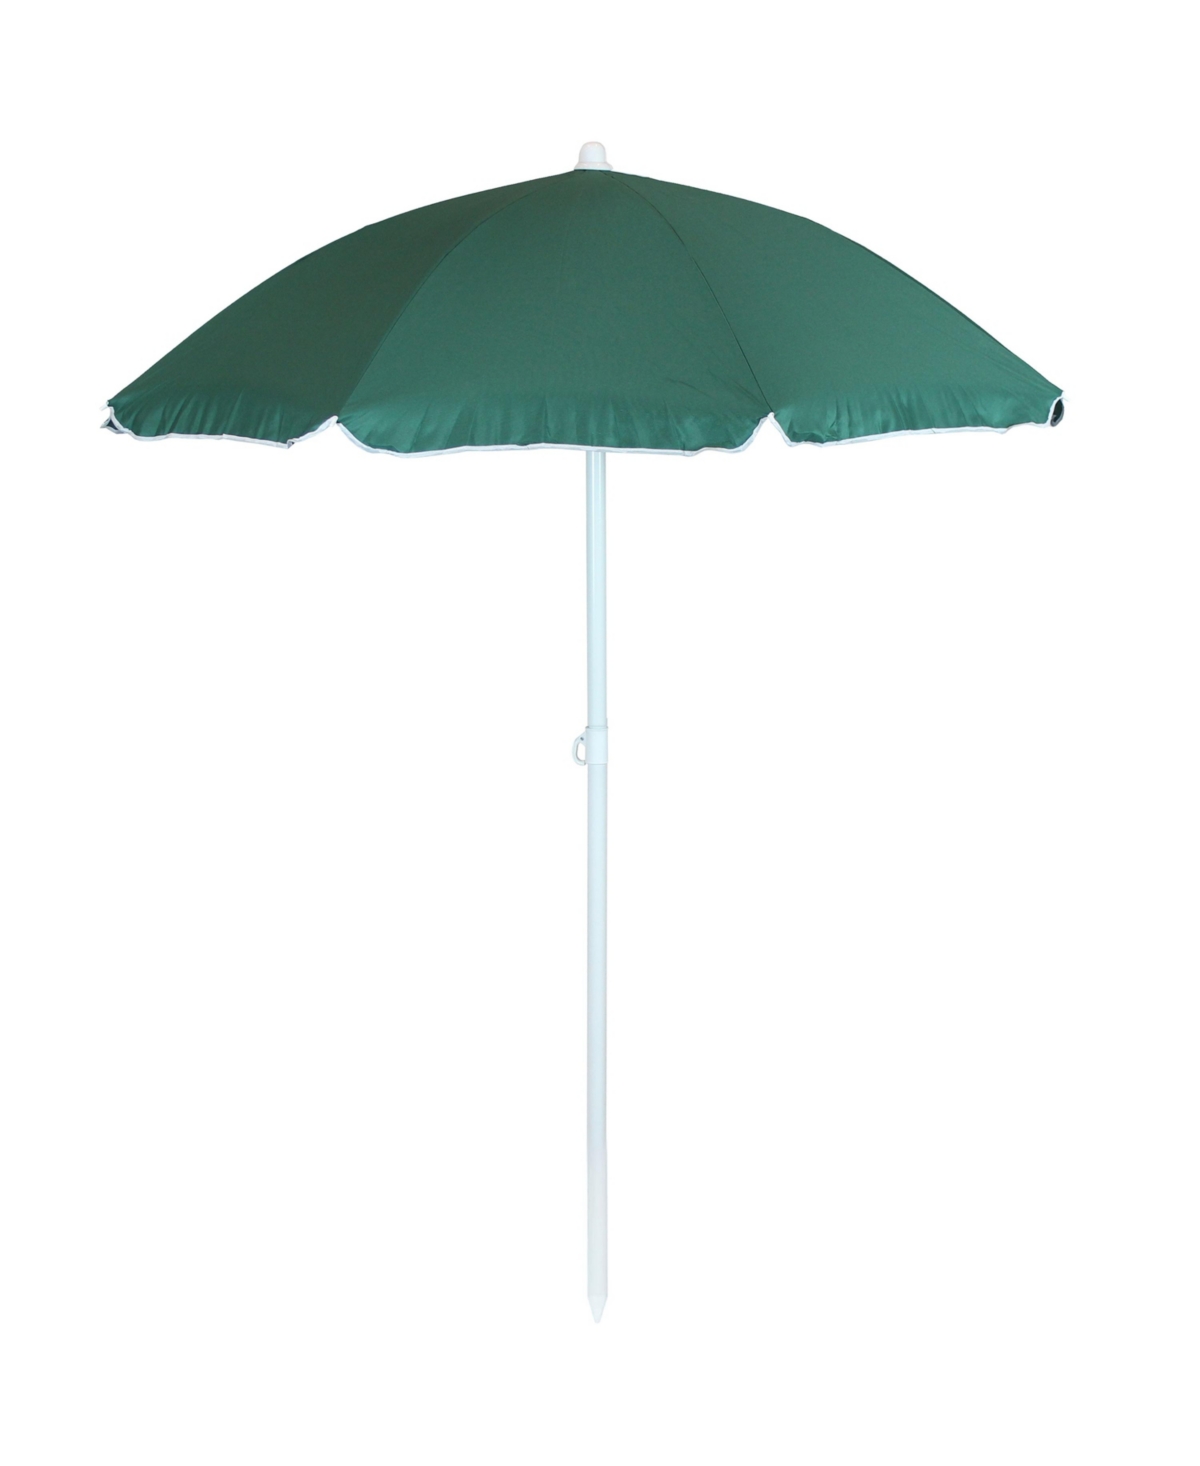 5 ft Steel Beach Umbrella with Tilt - Sage Green - Light green